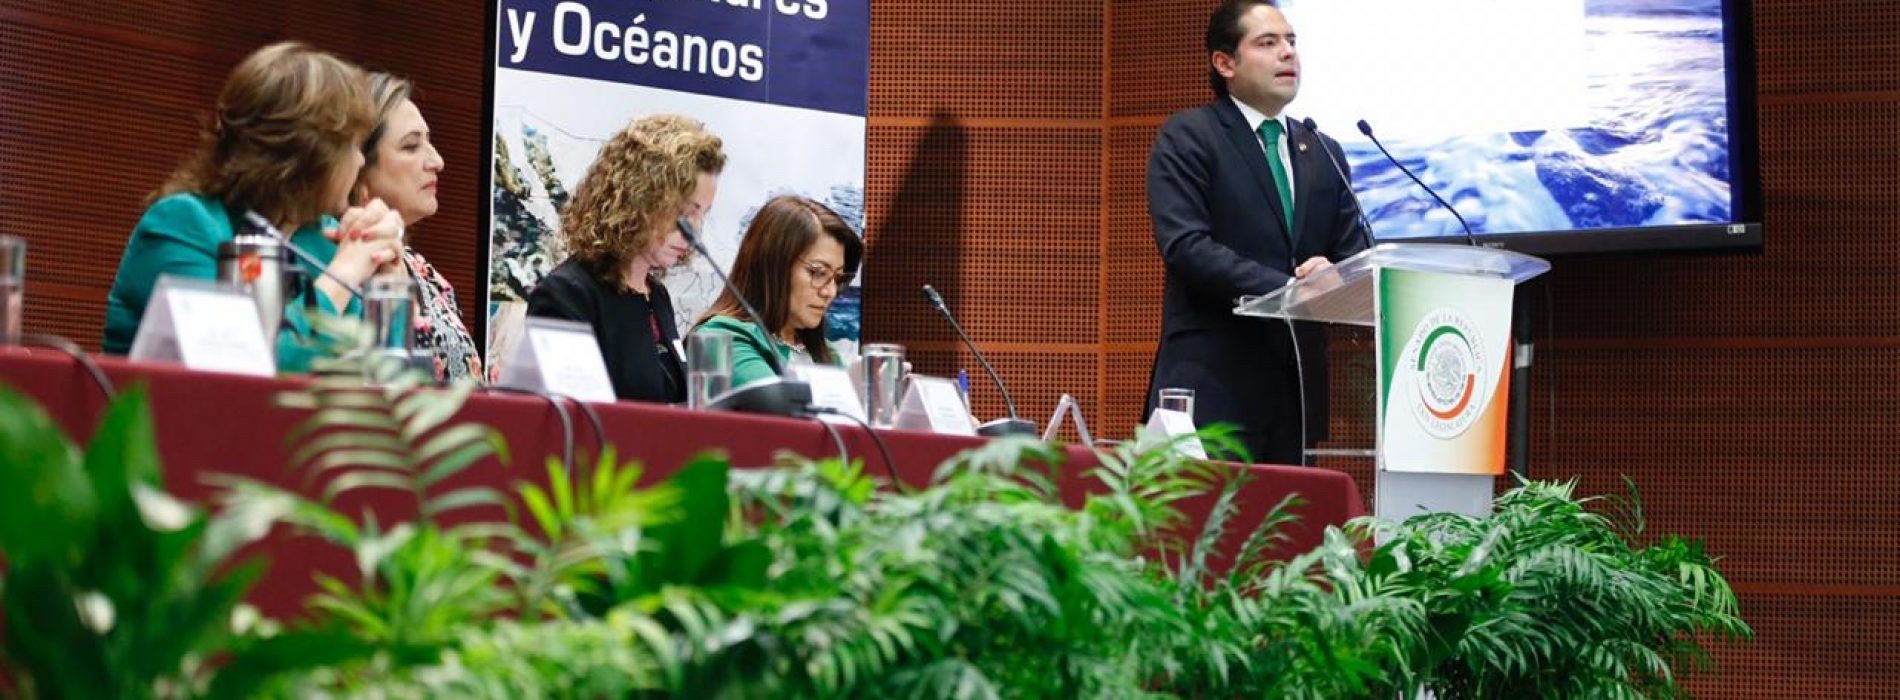 El Senador Raúl Bolaños-Cacho Cué trabaja para reducir la acidificación de mares, océanos y ríos